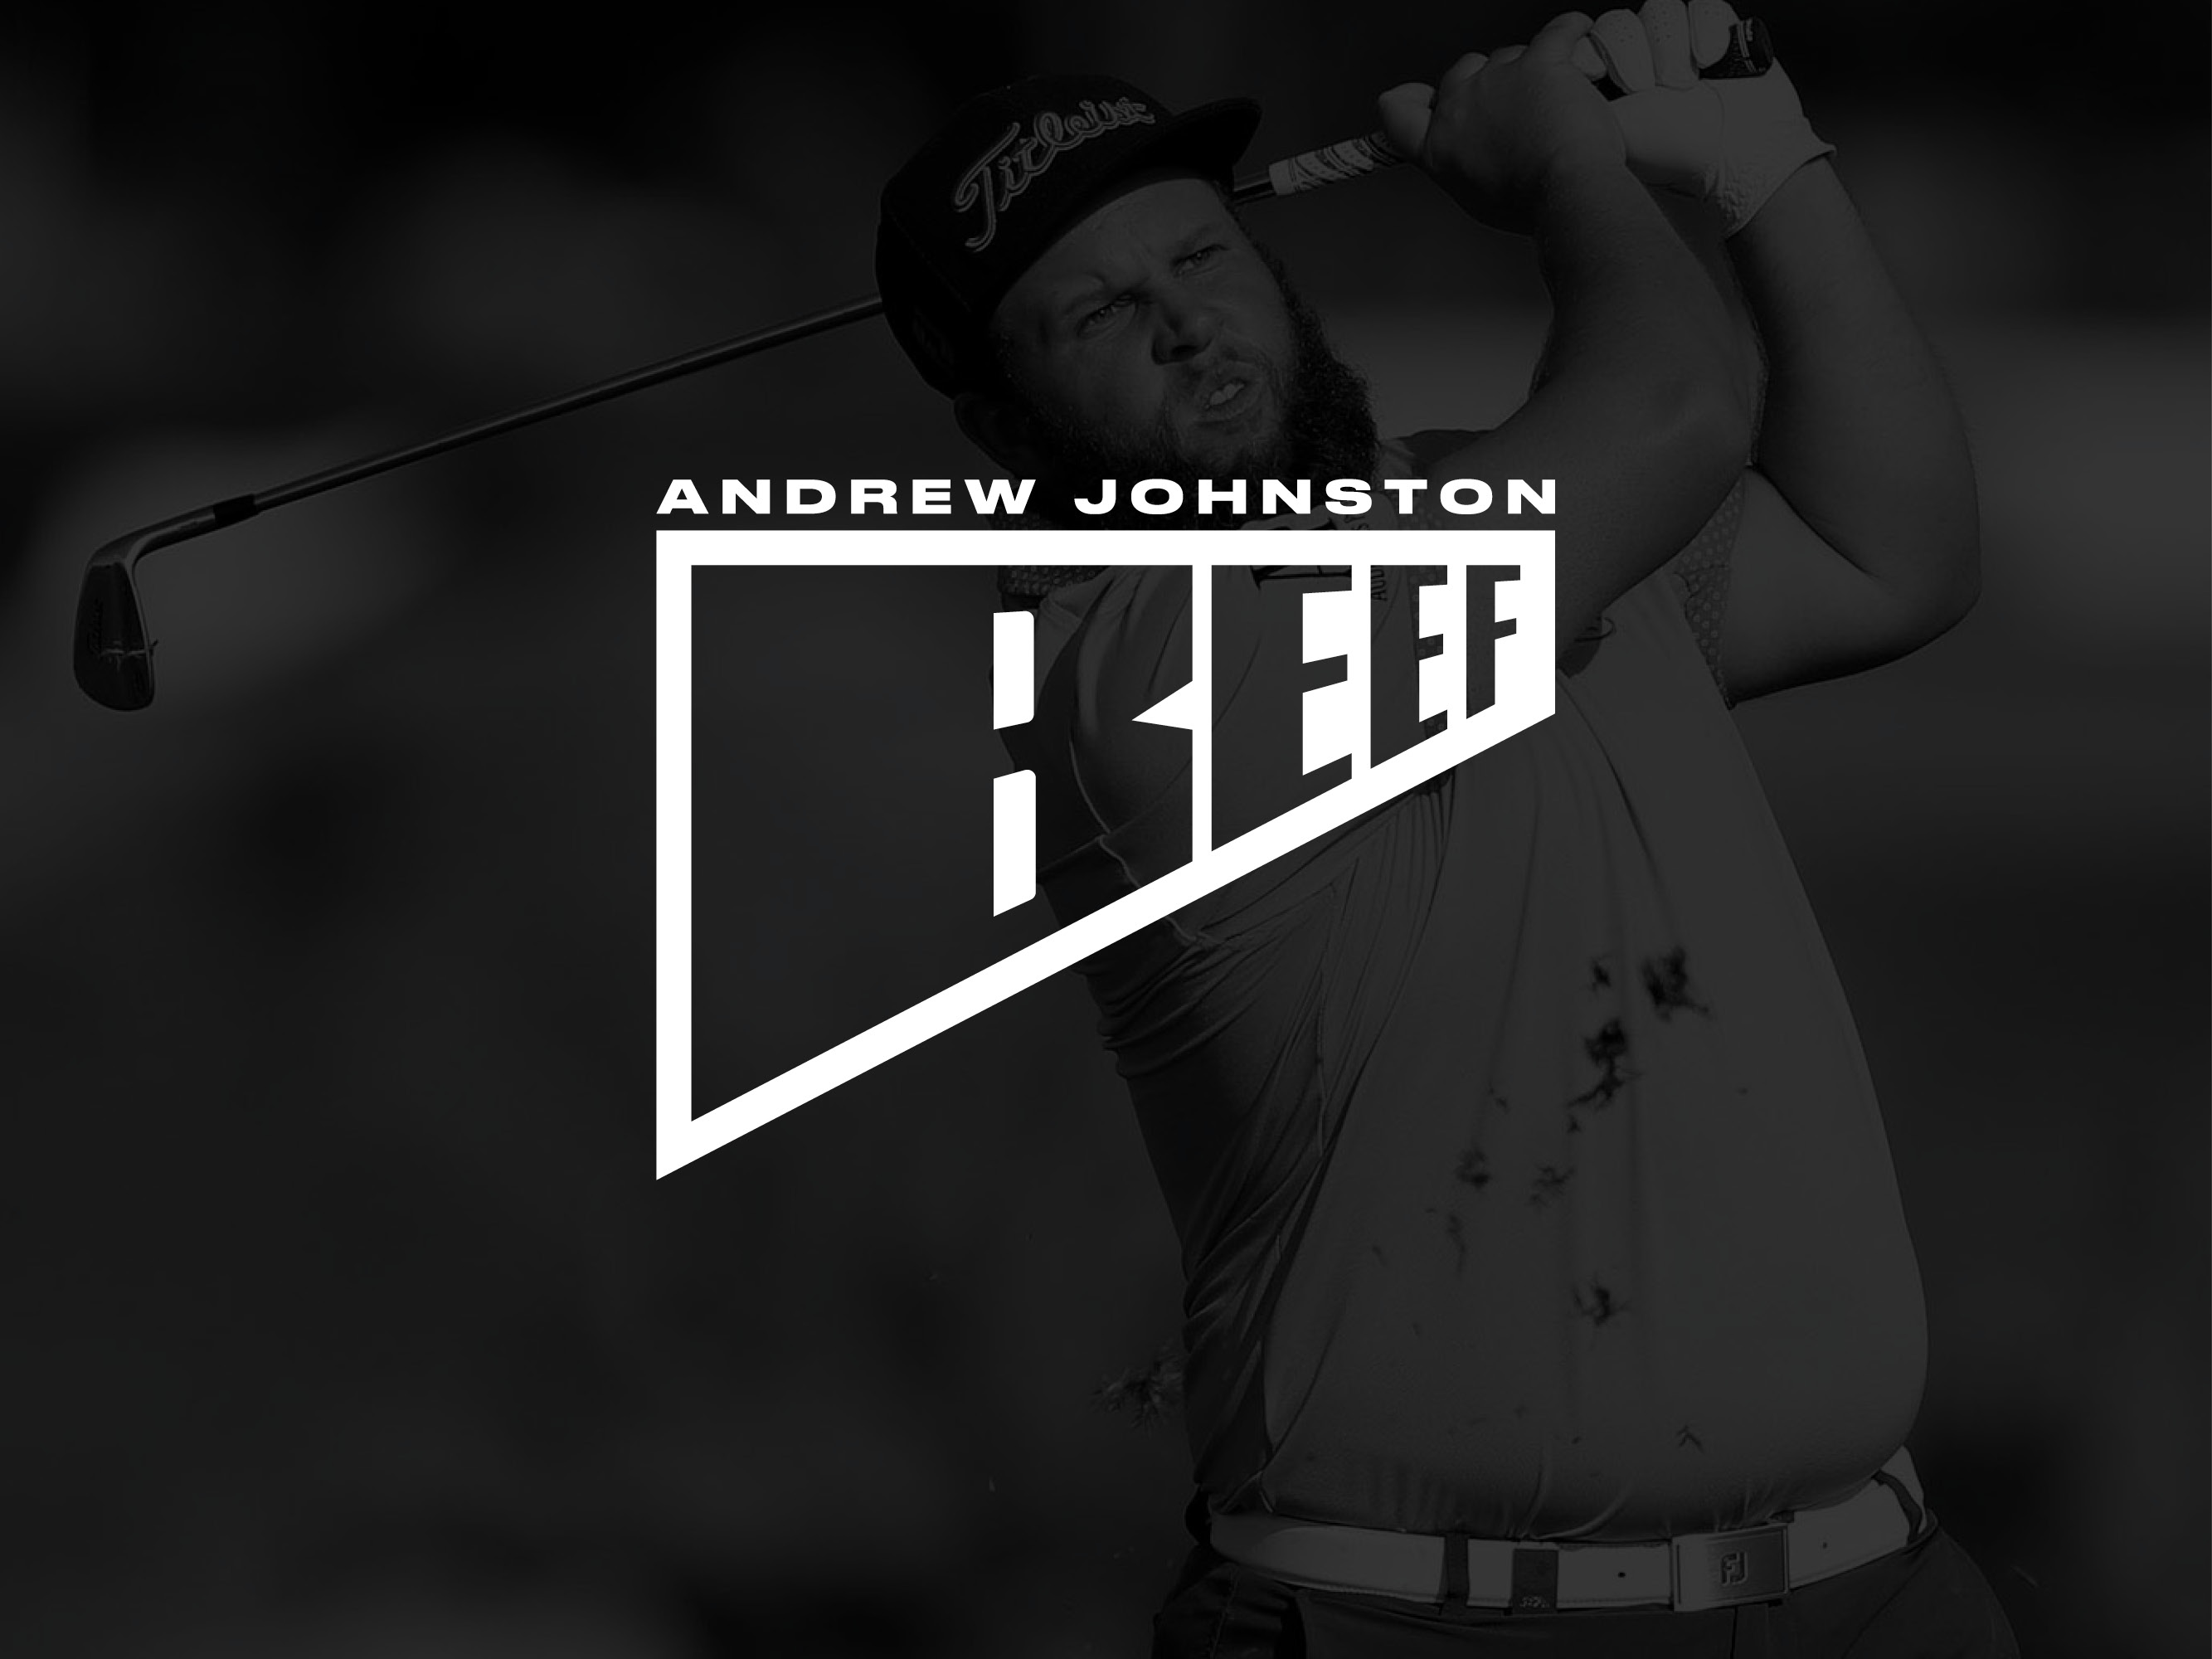 Andrew 'Beef' Johnston PGA tour golfer logo design